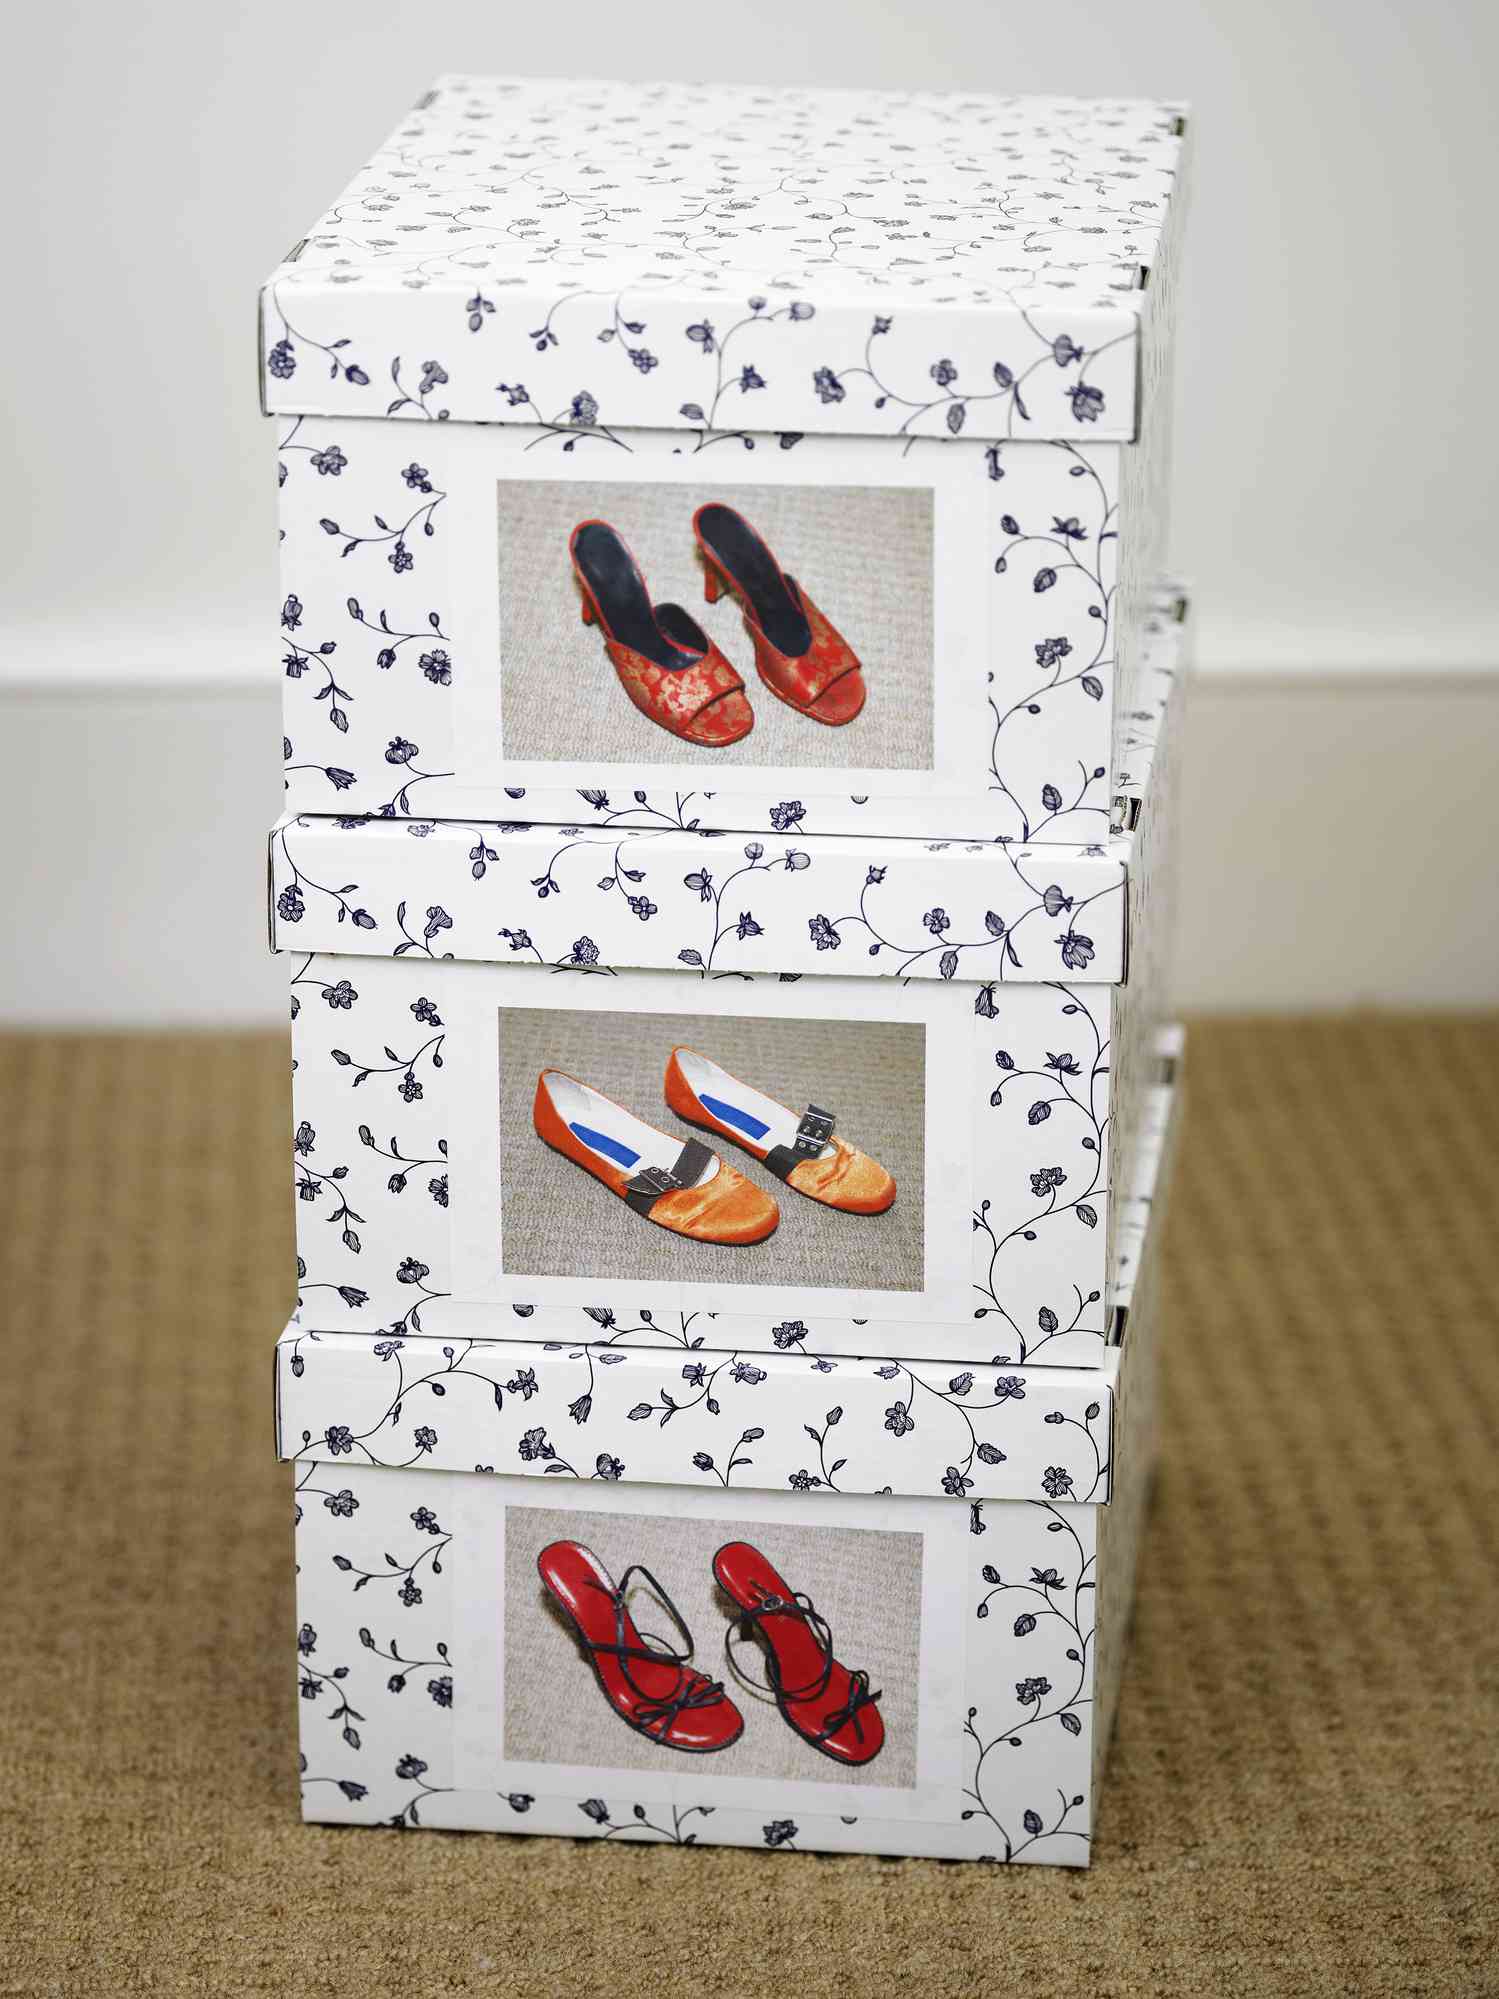 Schuhkartons mit Bildern der Schuhe darin